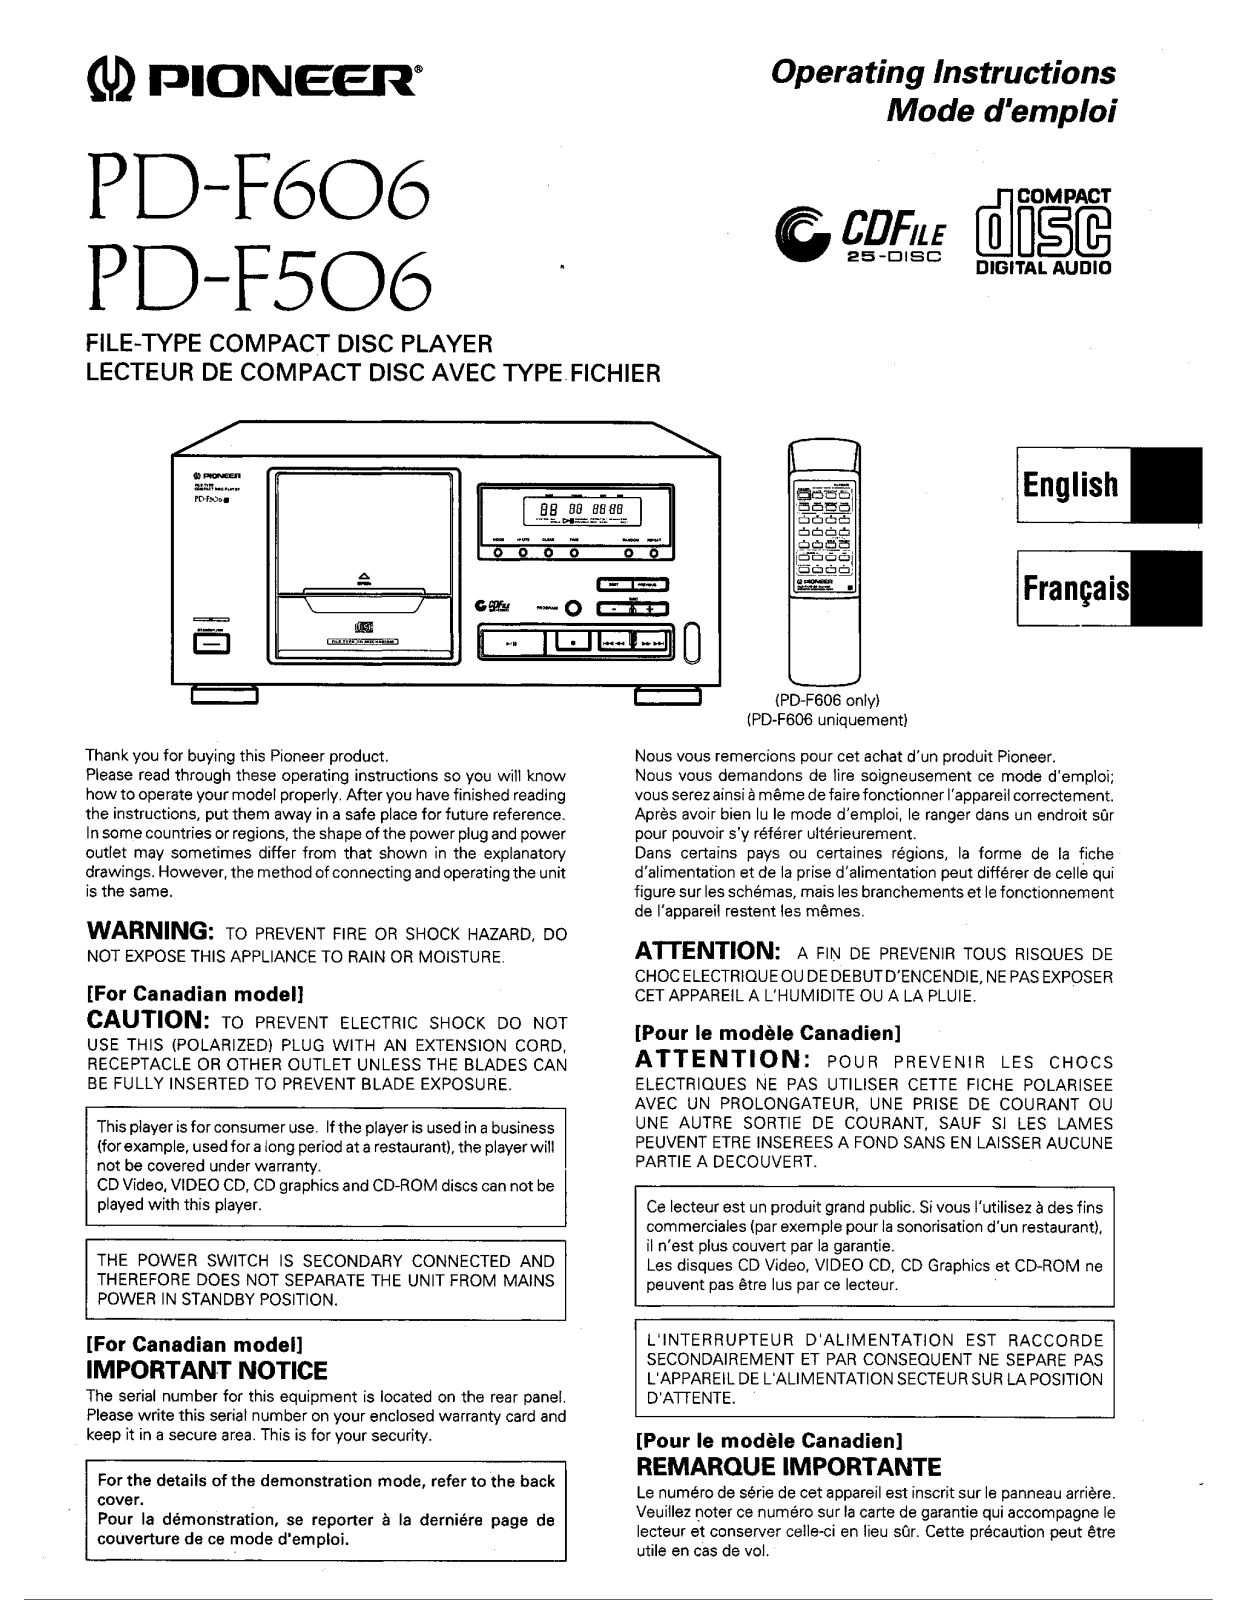 Pioneer PD-F606, PD-F506 Manual